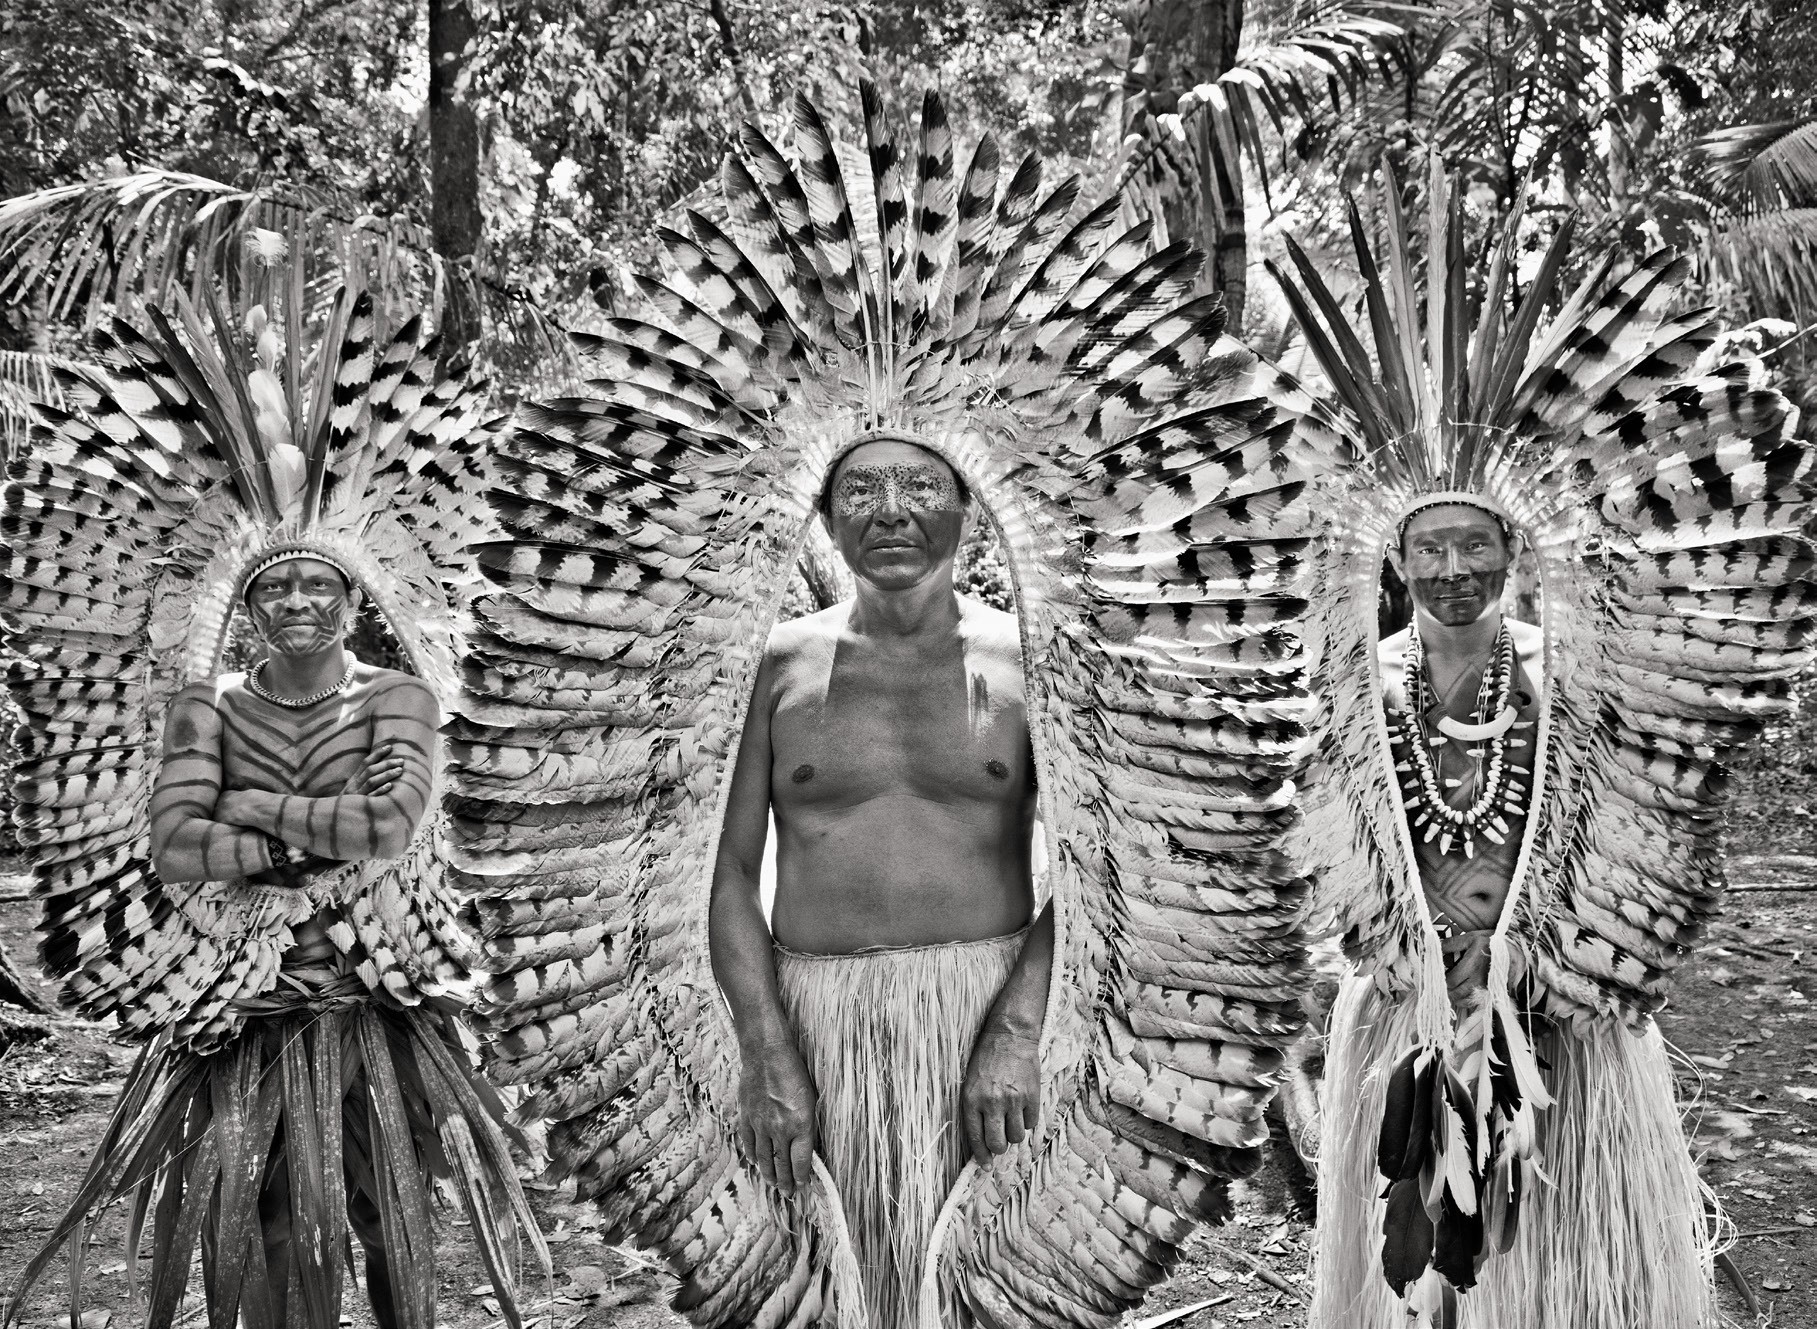 Το μοναδικό ντοκουμέντο στο δάσος του Αμαζονίου από τον παγκόσμιο γκουρού της φωτογραφίας